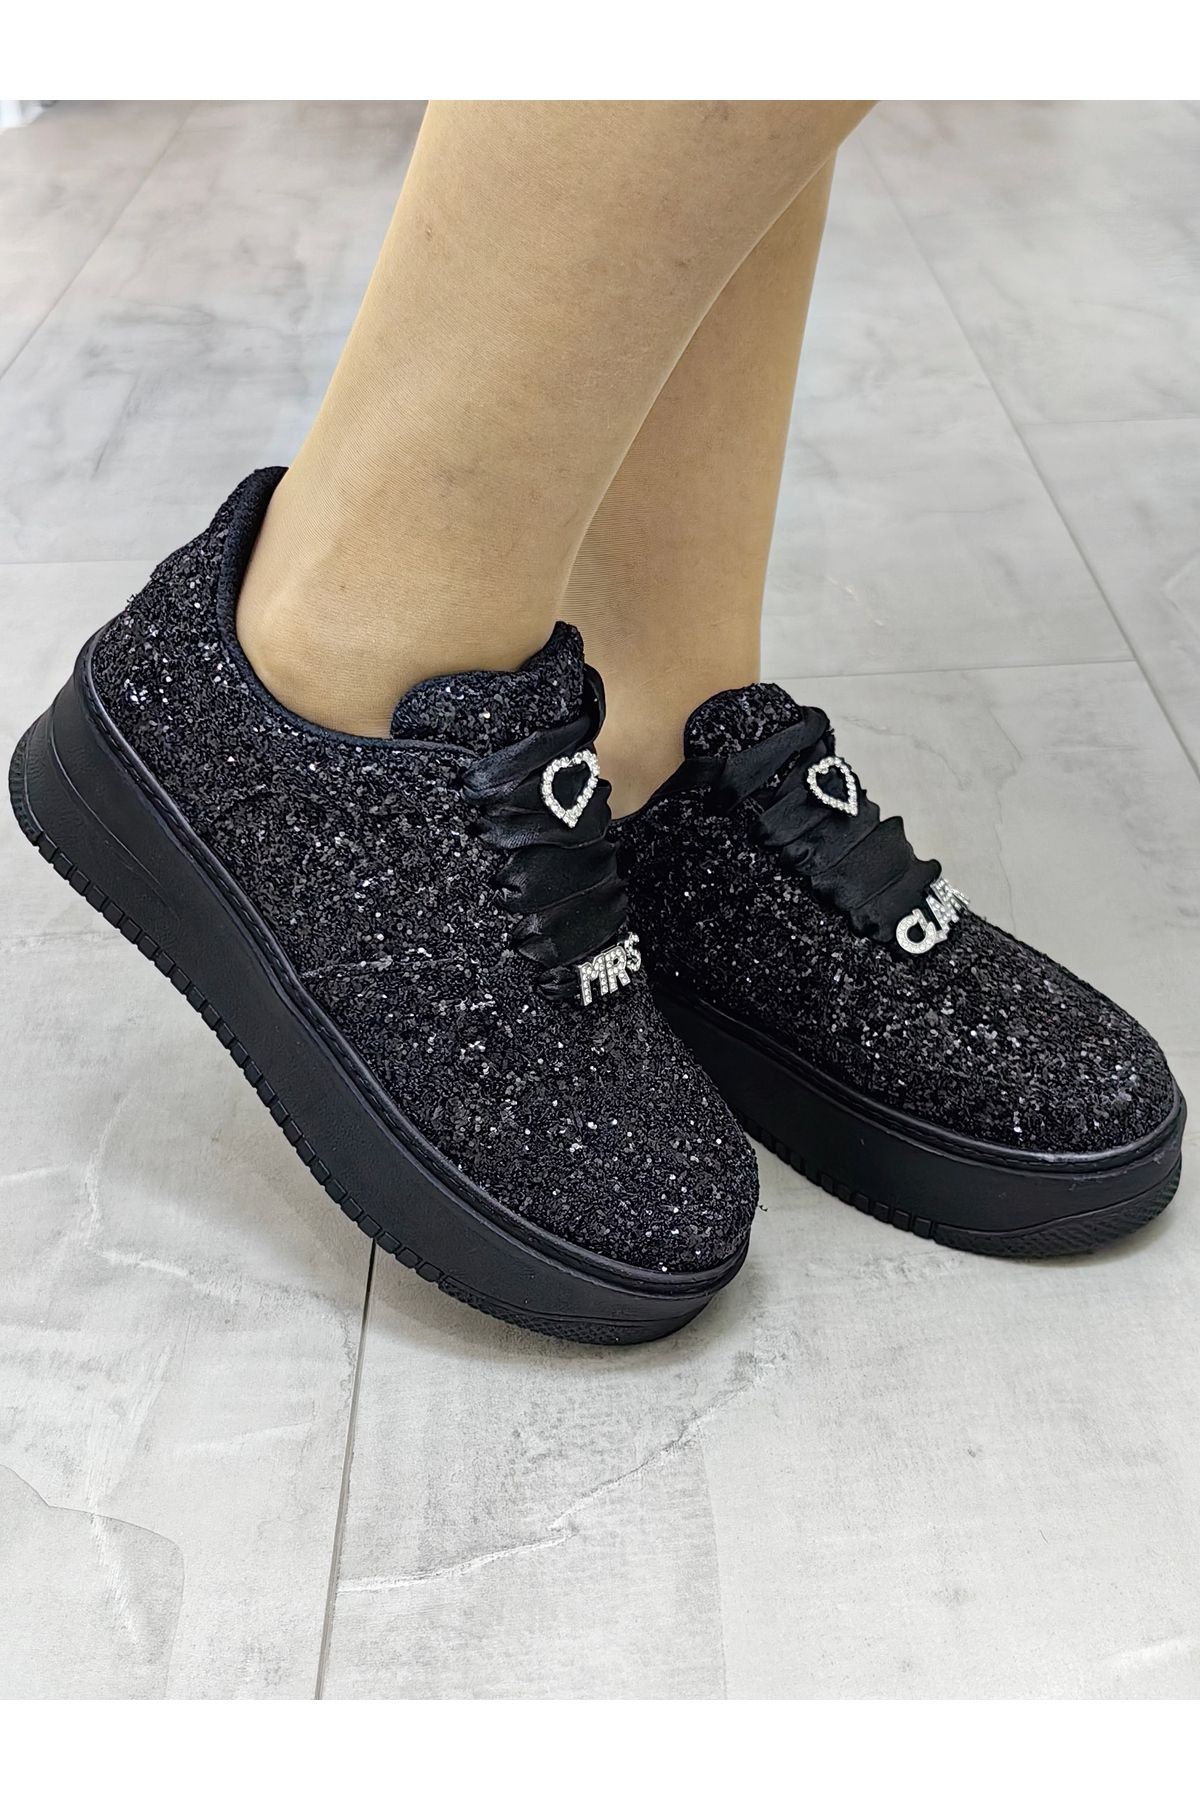 Ayakkabı Tutkusu Stilo ® Siyah Spor Ayakkabı Parıltılı Şık Tasarım Rahat Sneaker Işıltılı Siyah Ayakkabı